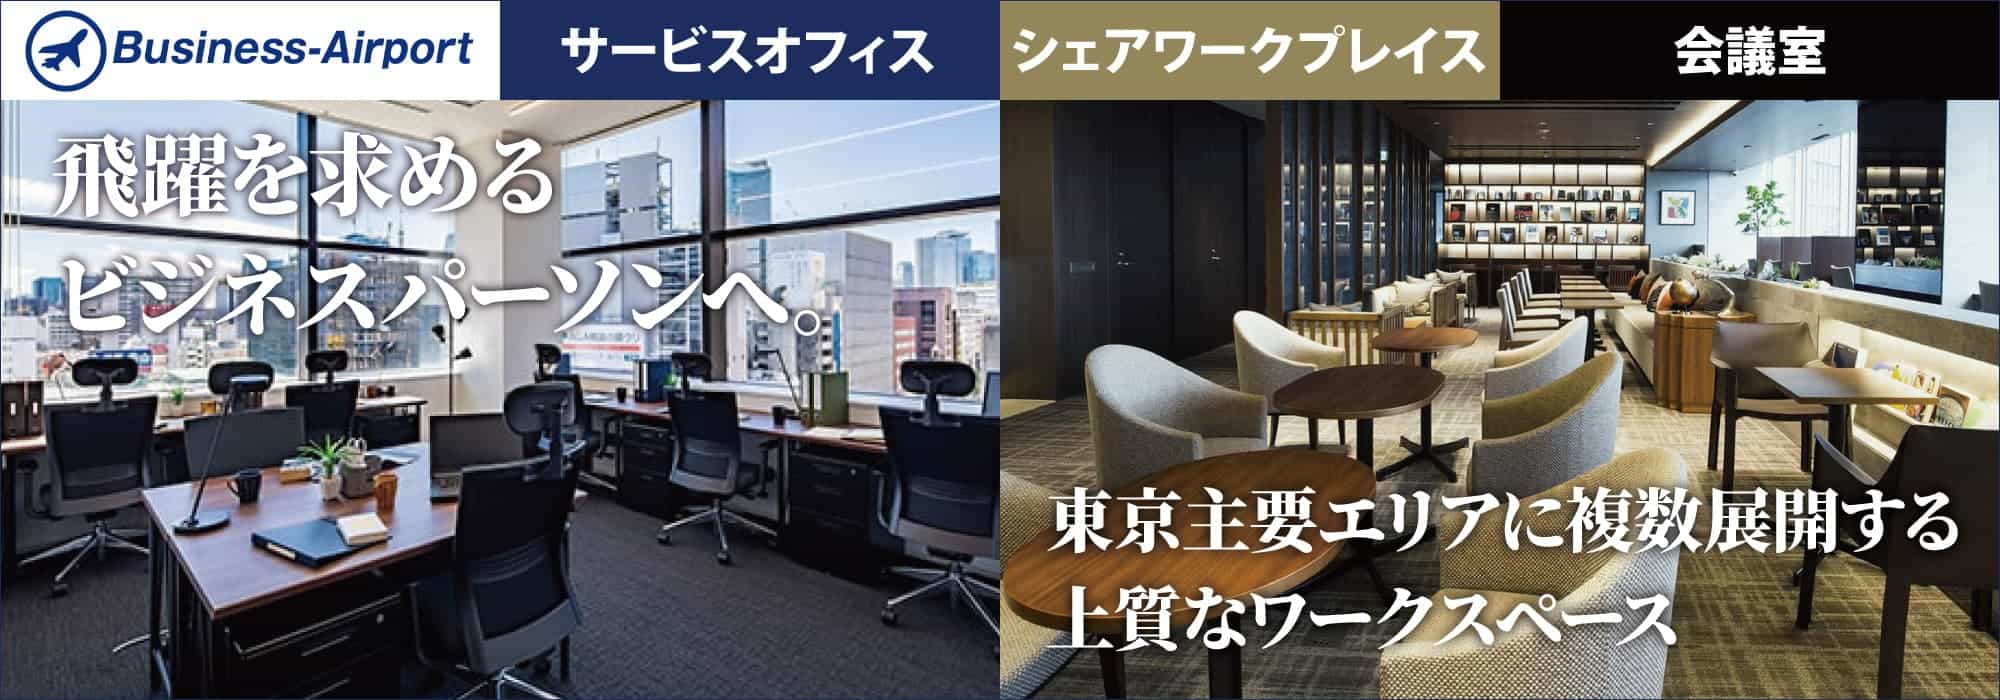 【ビジネスエアポート京橋】JR「東京」八重洲南口より徒歩7分。東急不動産の上質なレンタルオフィス